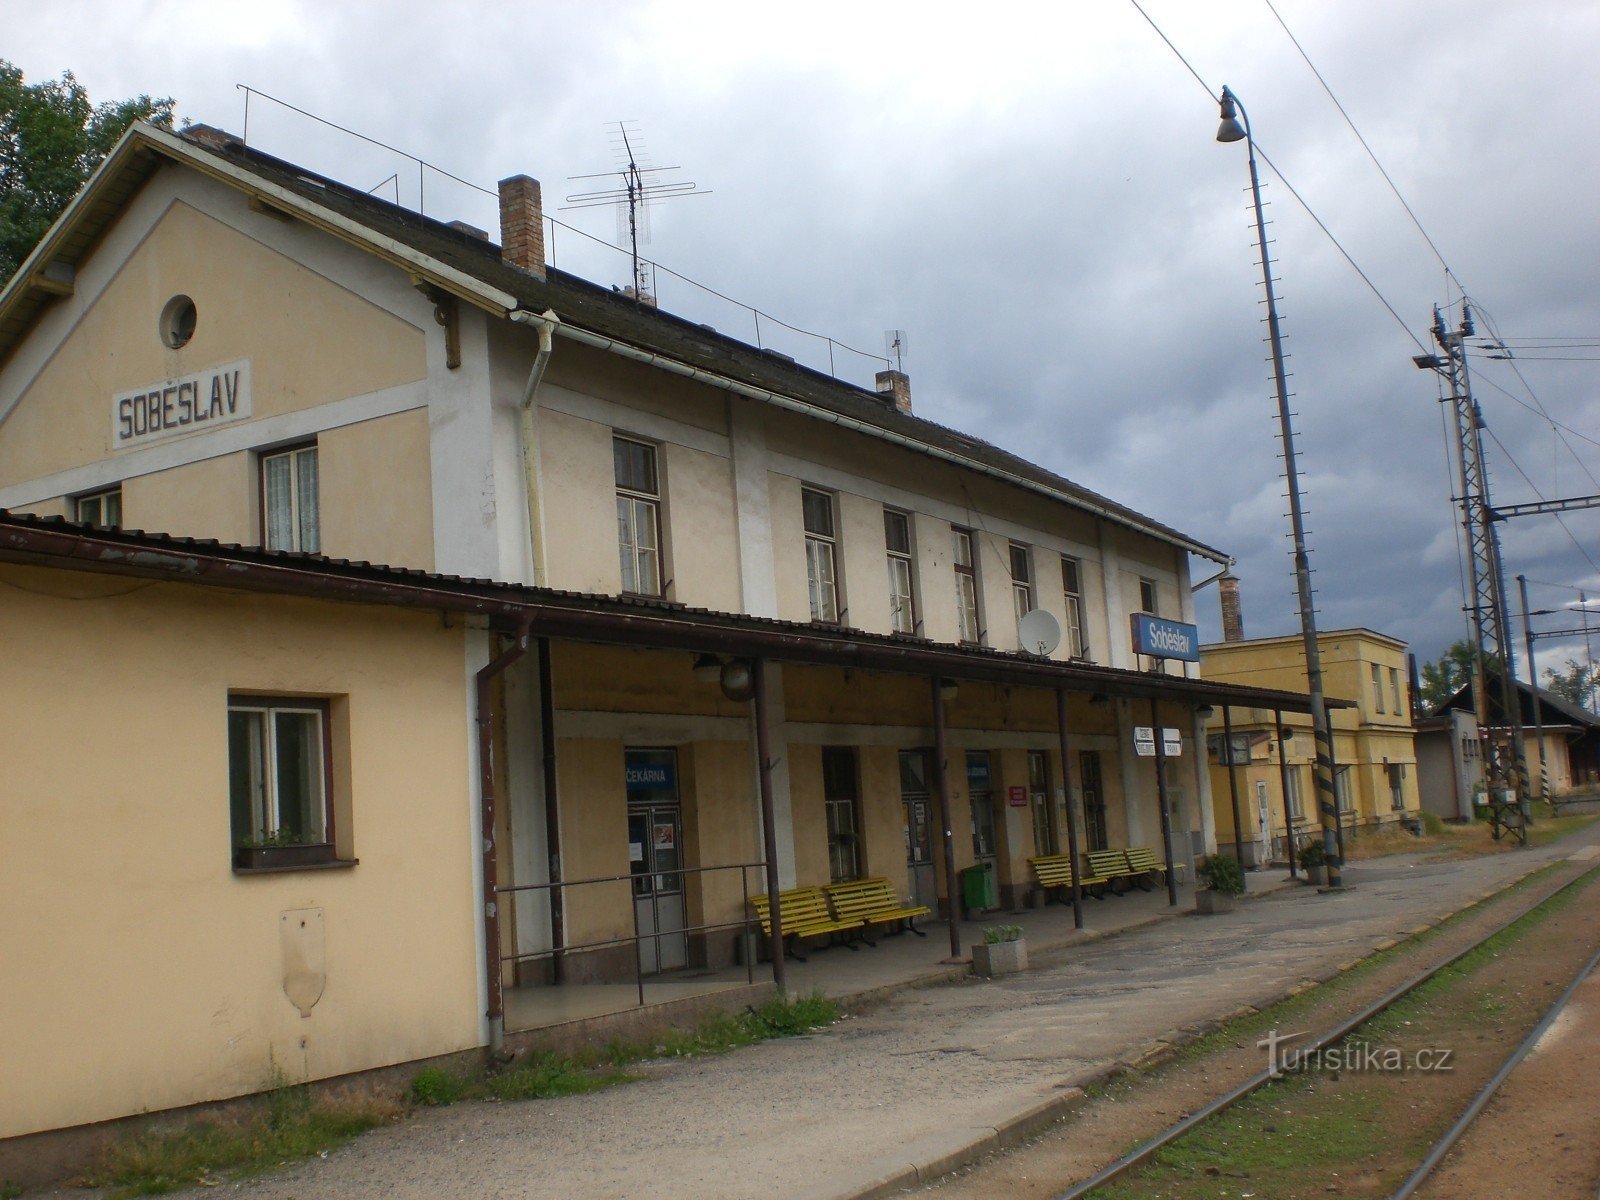 Собеслав - залізнична станція